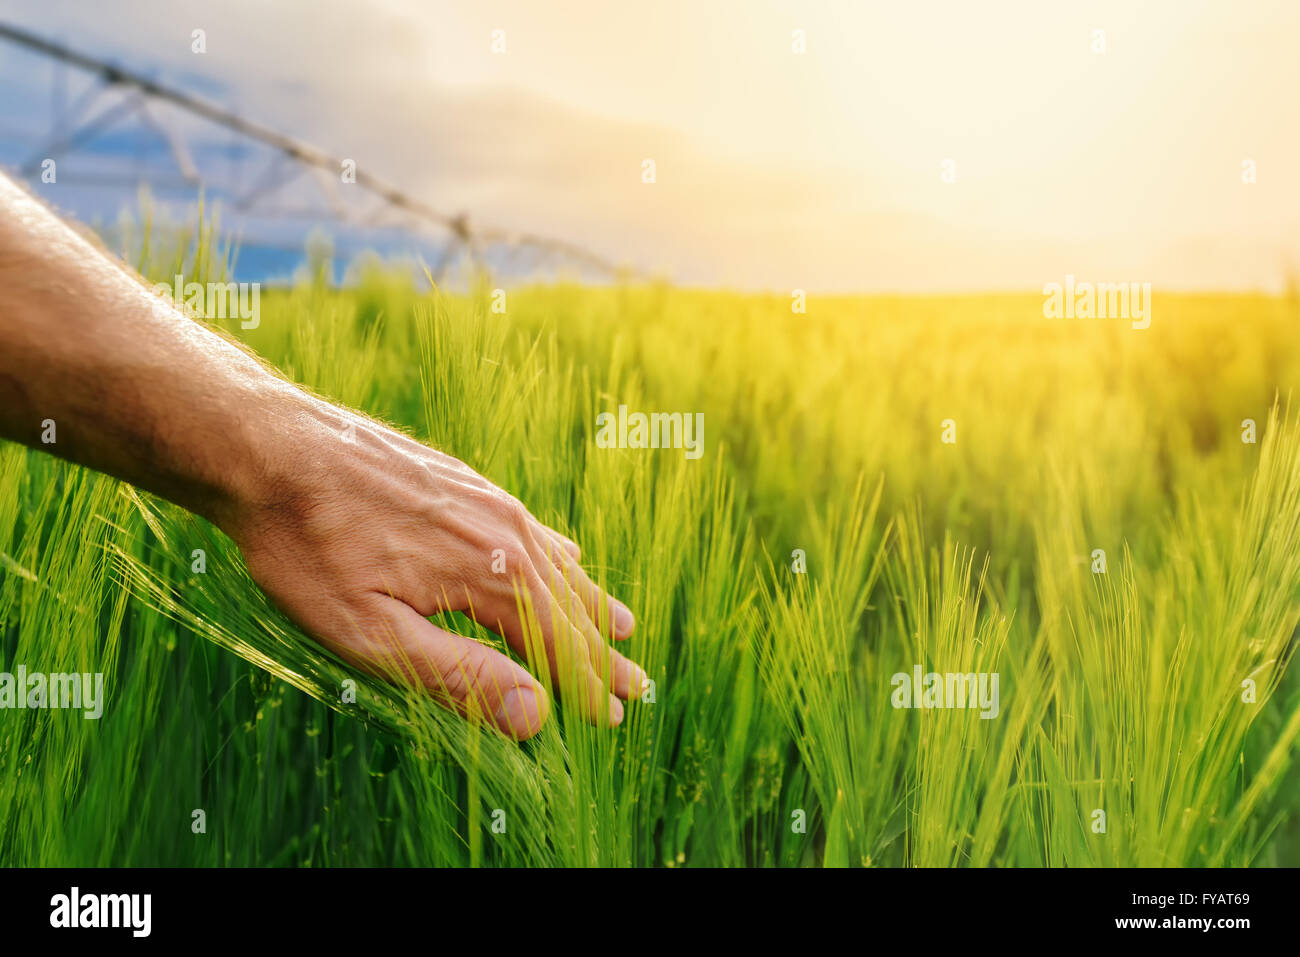 Agricoltore toccando Grano verde piante irrigate nel campo coltivato, mano sulle colture, la luce del sole in background, il fuoco selettivo Foto Stock